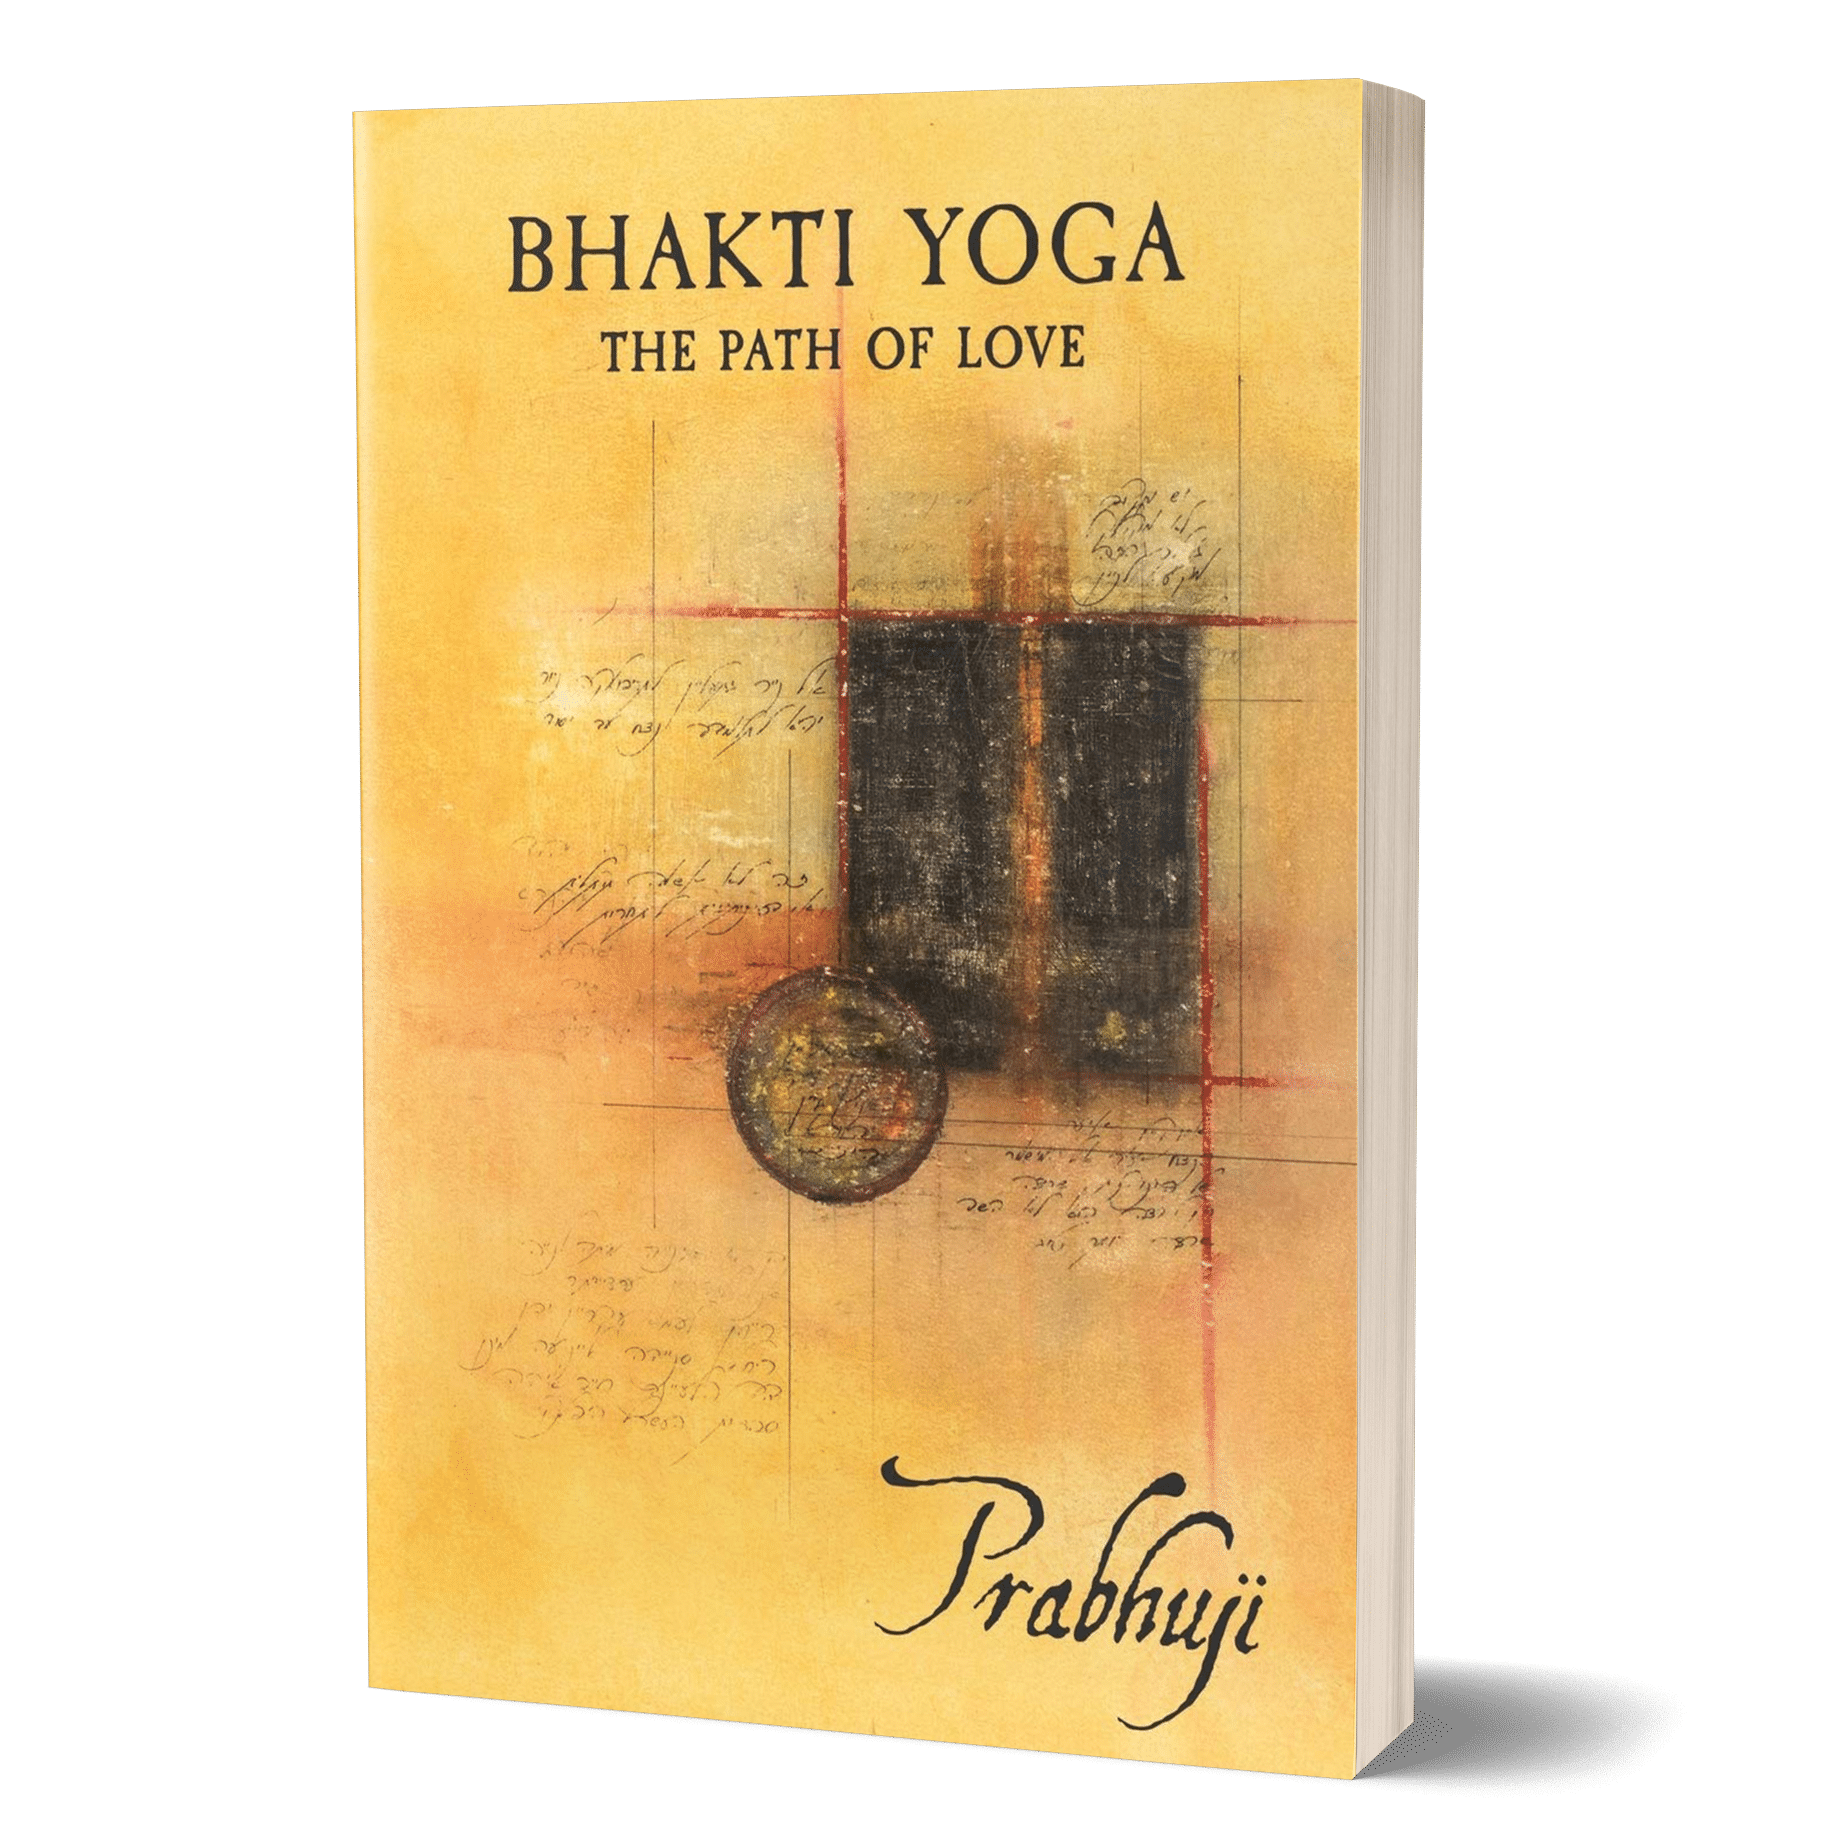 Bhakti yoga: The path of love - Avadhutashram